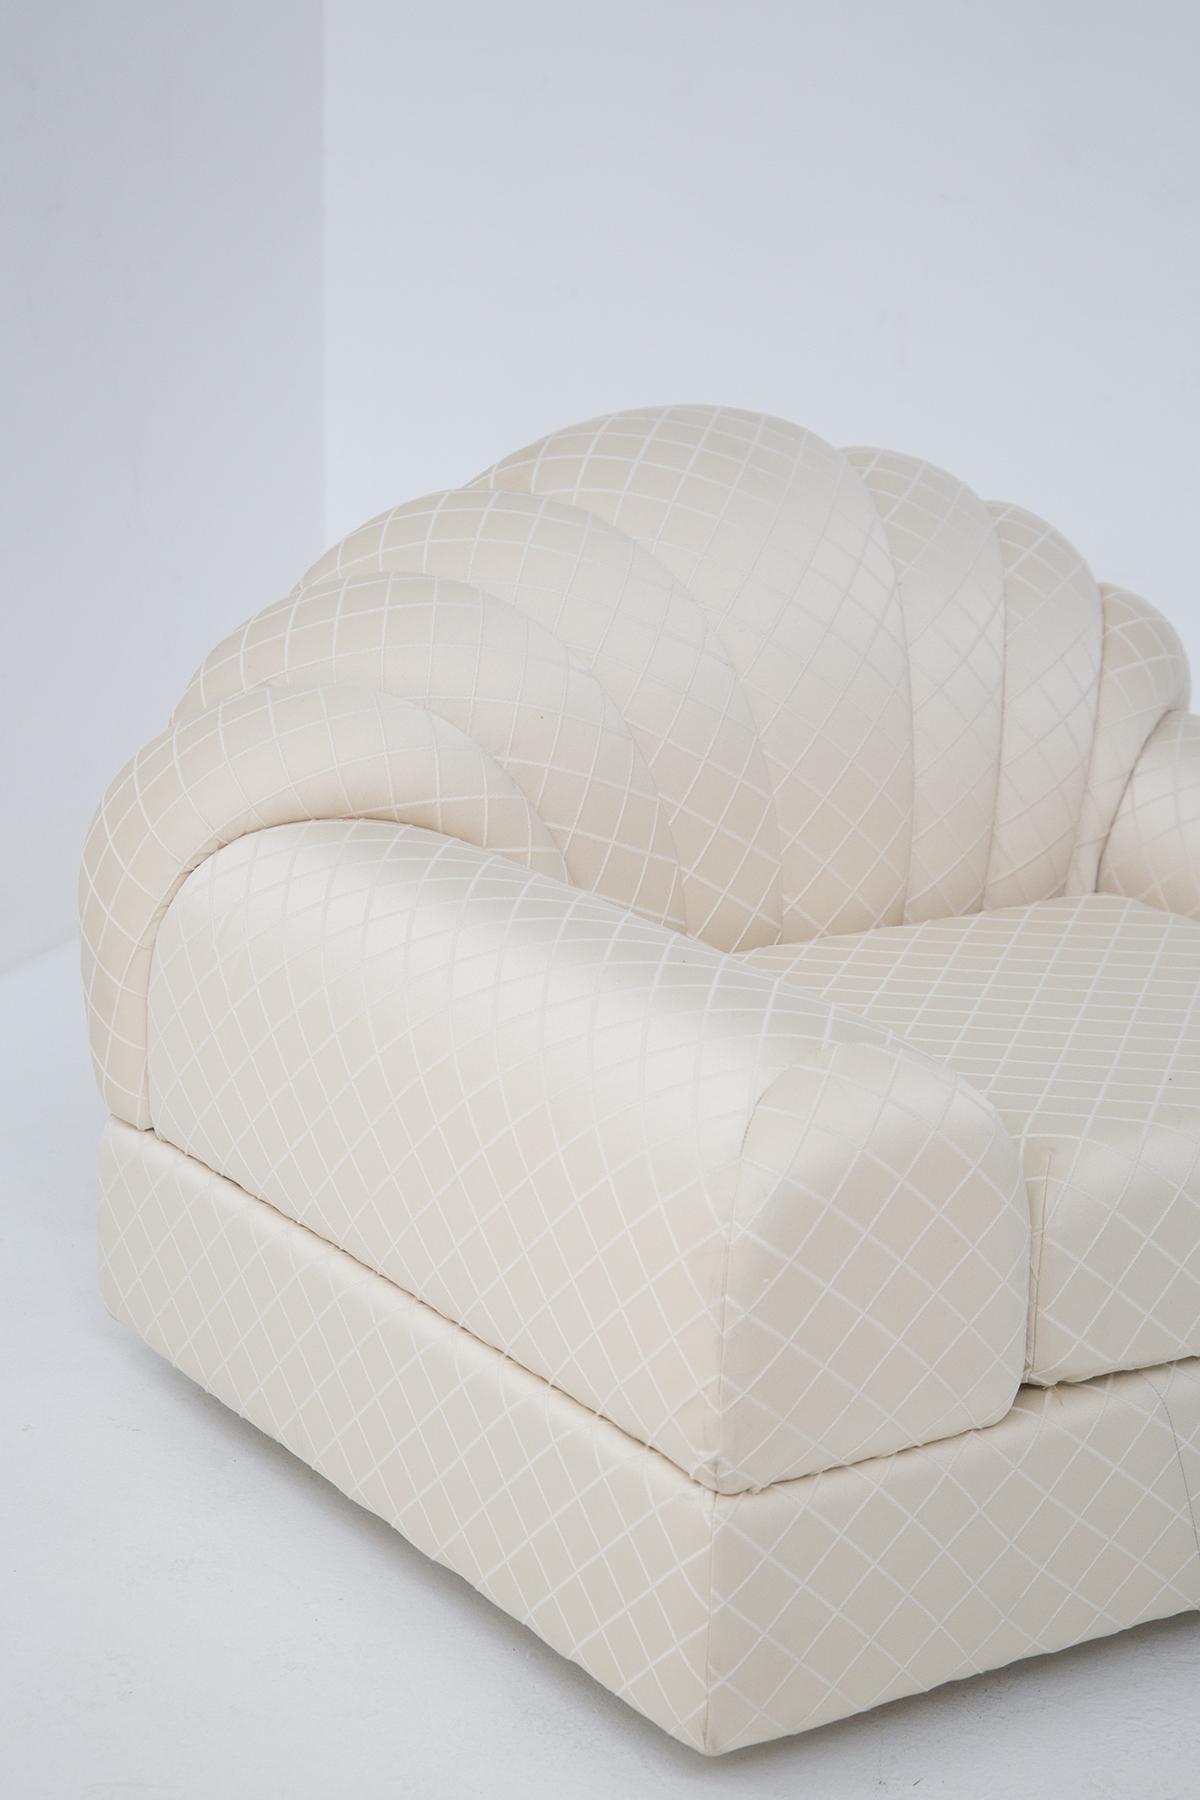 Die eleganten Vintage-Sessel wurden in den 70er Jahren von dem berühmten Alain Delon für den Edelhersteller Maison Jansen entworfen. Das Originaletikett von Alain Delon ist vorhanden. 
Die beiden Sessel zeichnen sich durch geschwungene Linien und